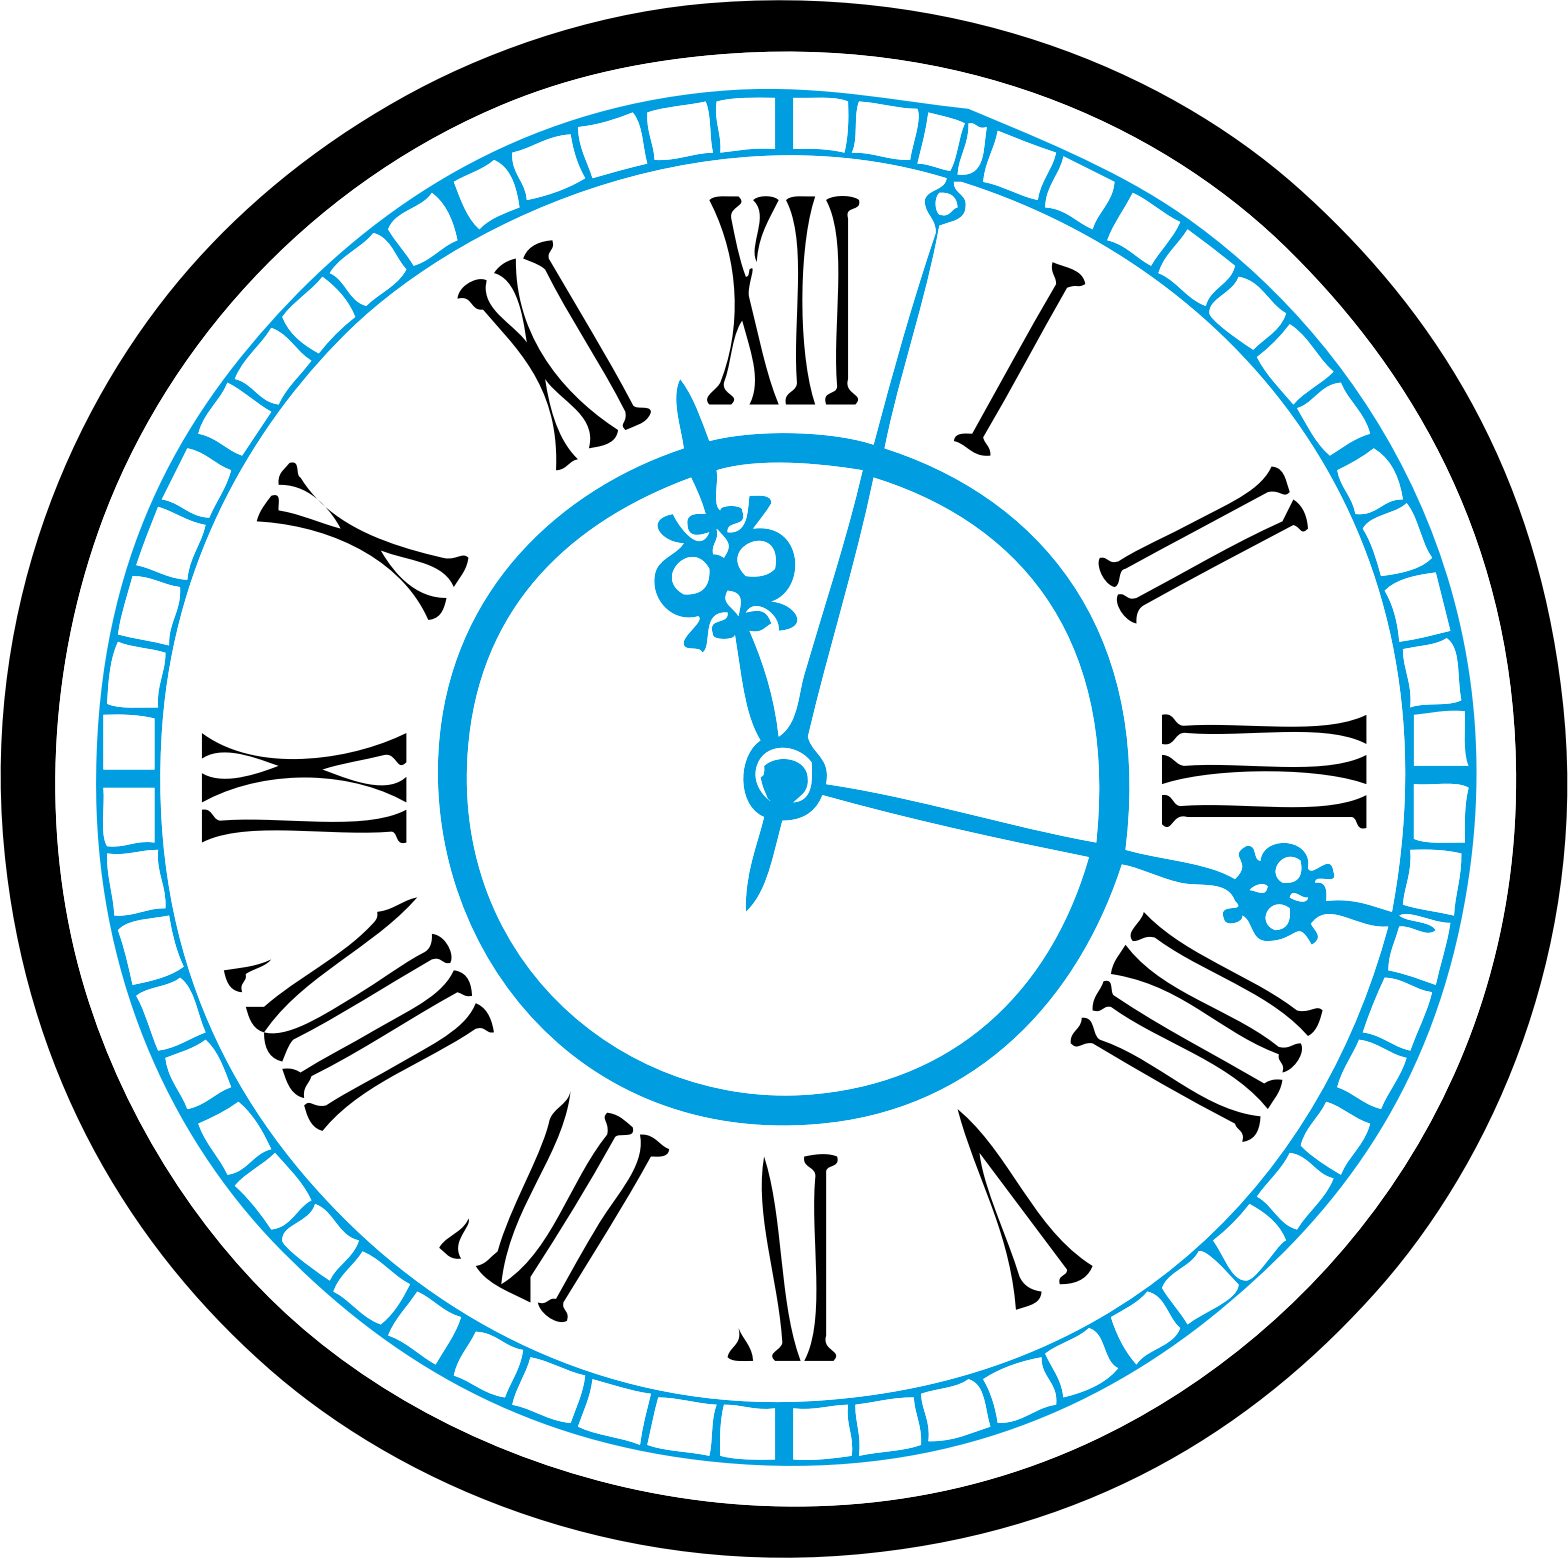 Картинка часов пнг. Часы циферблат. Векторное изображение часов. Векторное изображение циферблата часов. Часы круглые вектор.